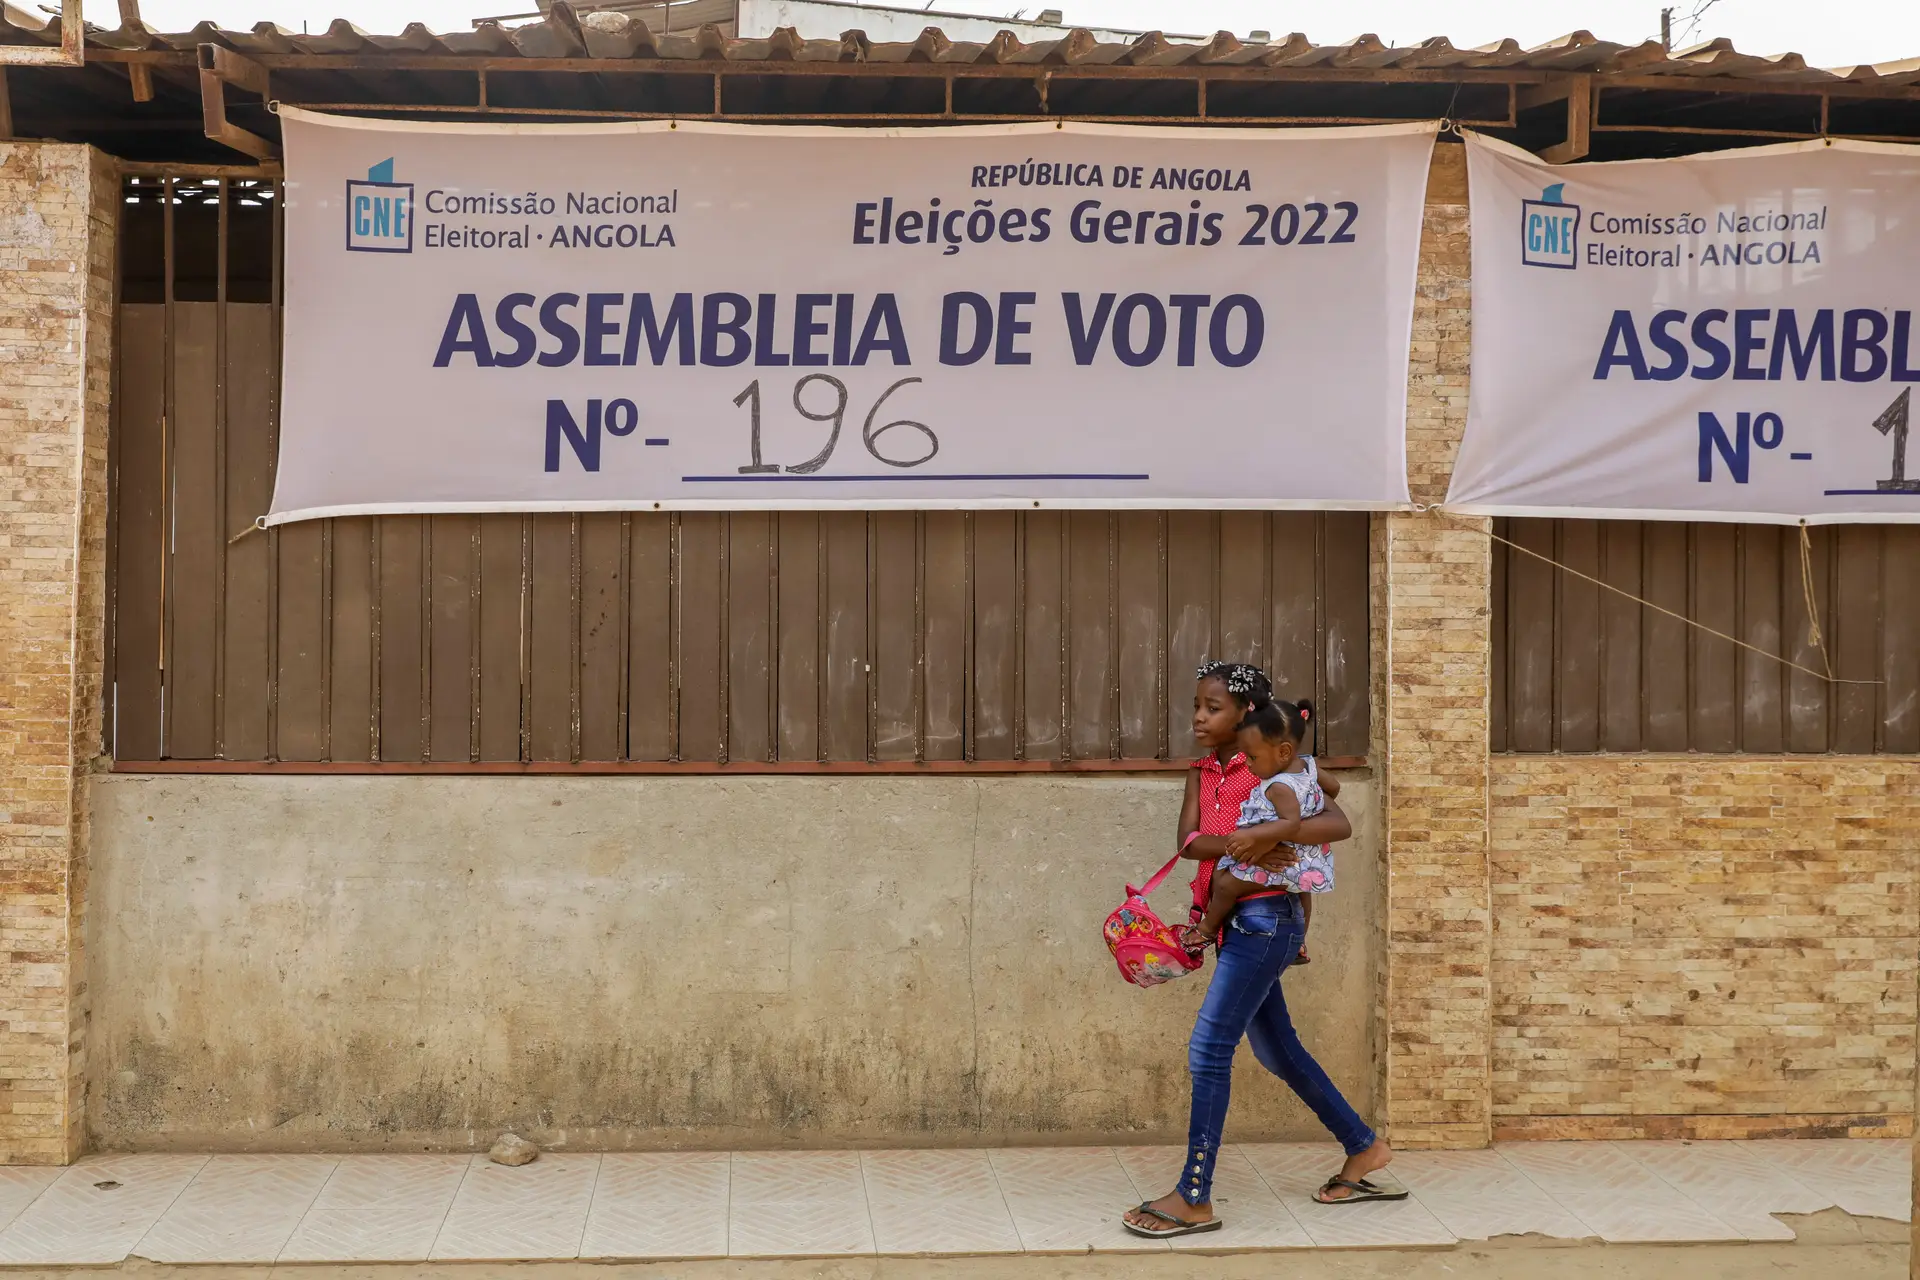 Eleições em Angola: algumas mesas abriram com atraso, mas adesão é grande. João Lourenço e Adalberto Costa Júnior já votaram